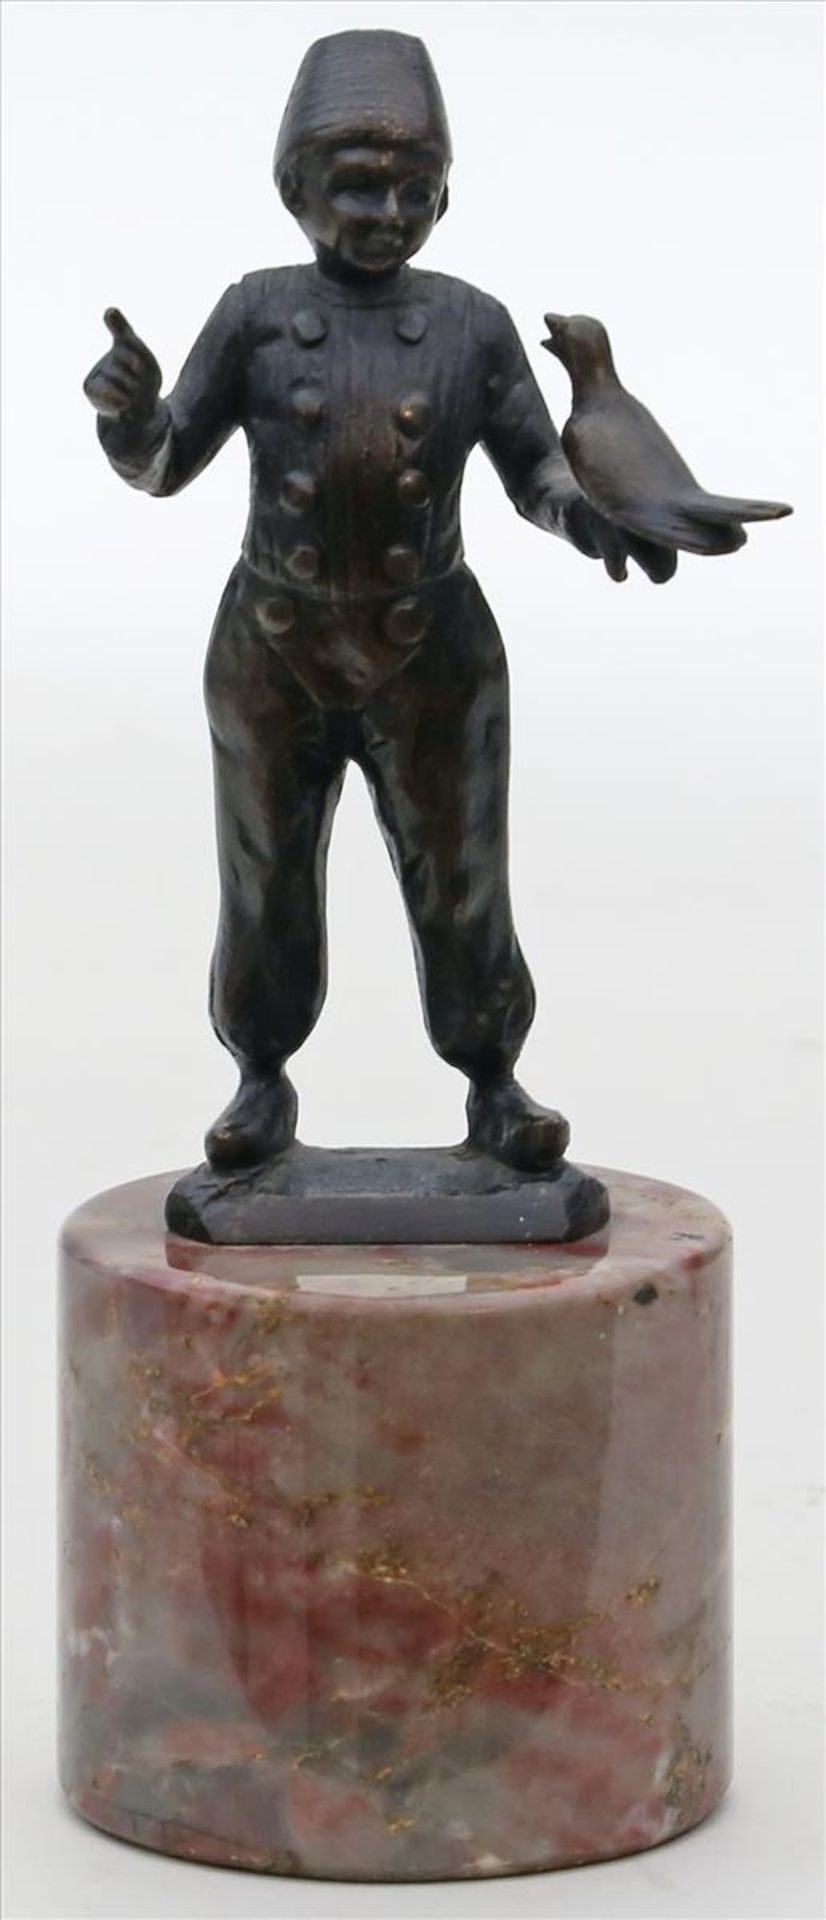 Skulptur eines Knaben mit Vogel.Schwarz-braun patinierte Bronze. Anf. 20. Jh. Mamorsockel. H. 8,5